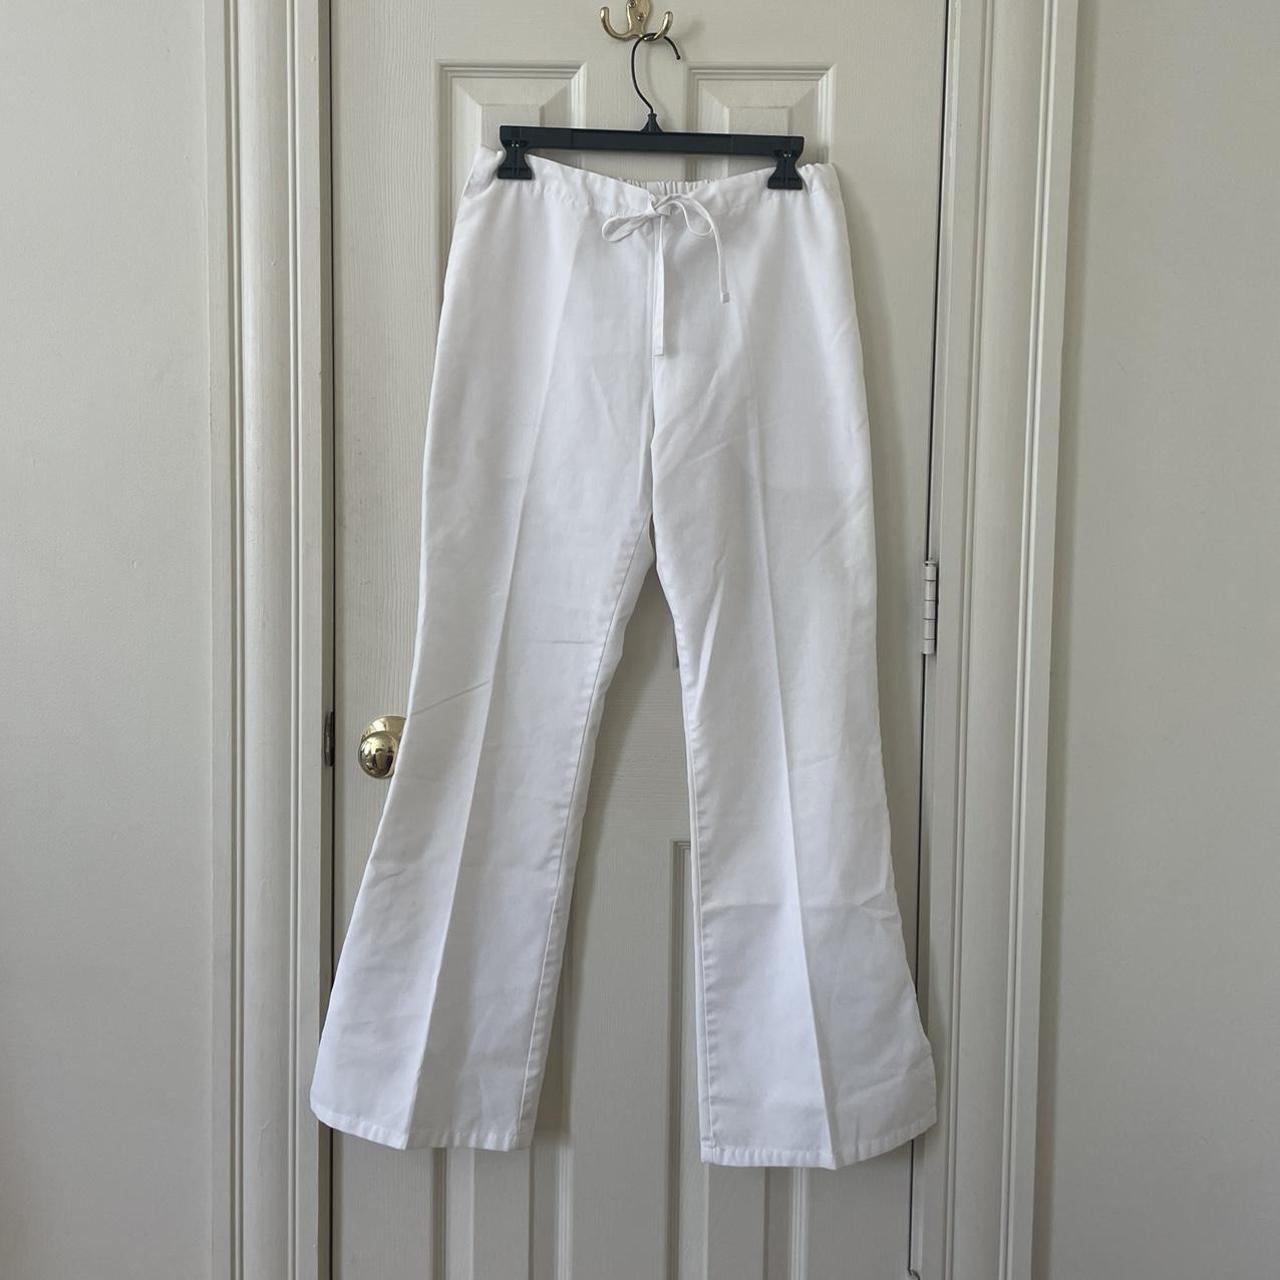 Low rise white linen scrub drawstring pants... - Depop